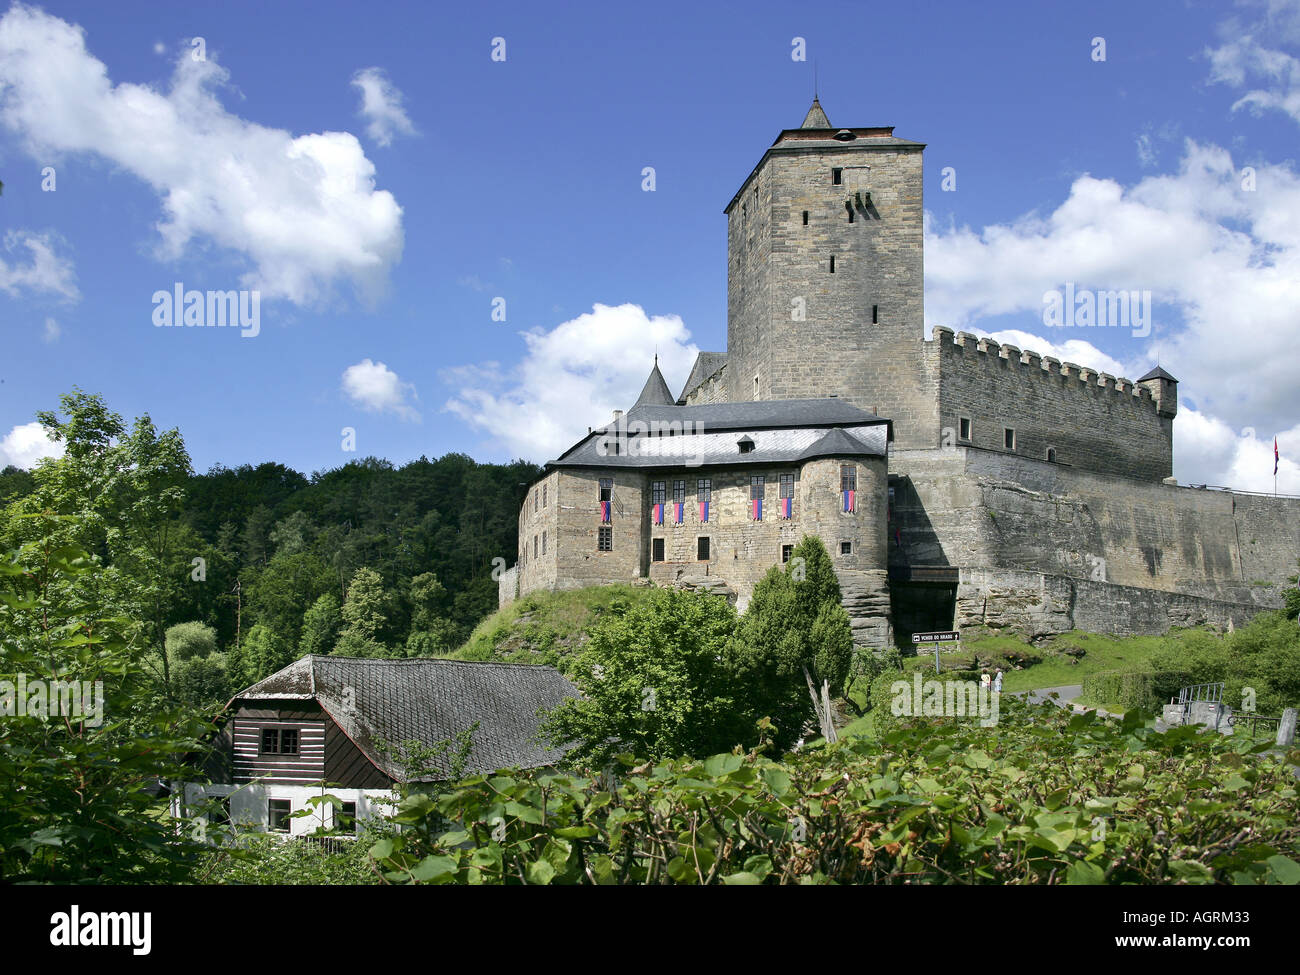 Protected landscape area Cesky raj Kost castle Czech Republic Stock Photo -  Alamy